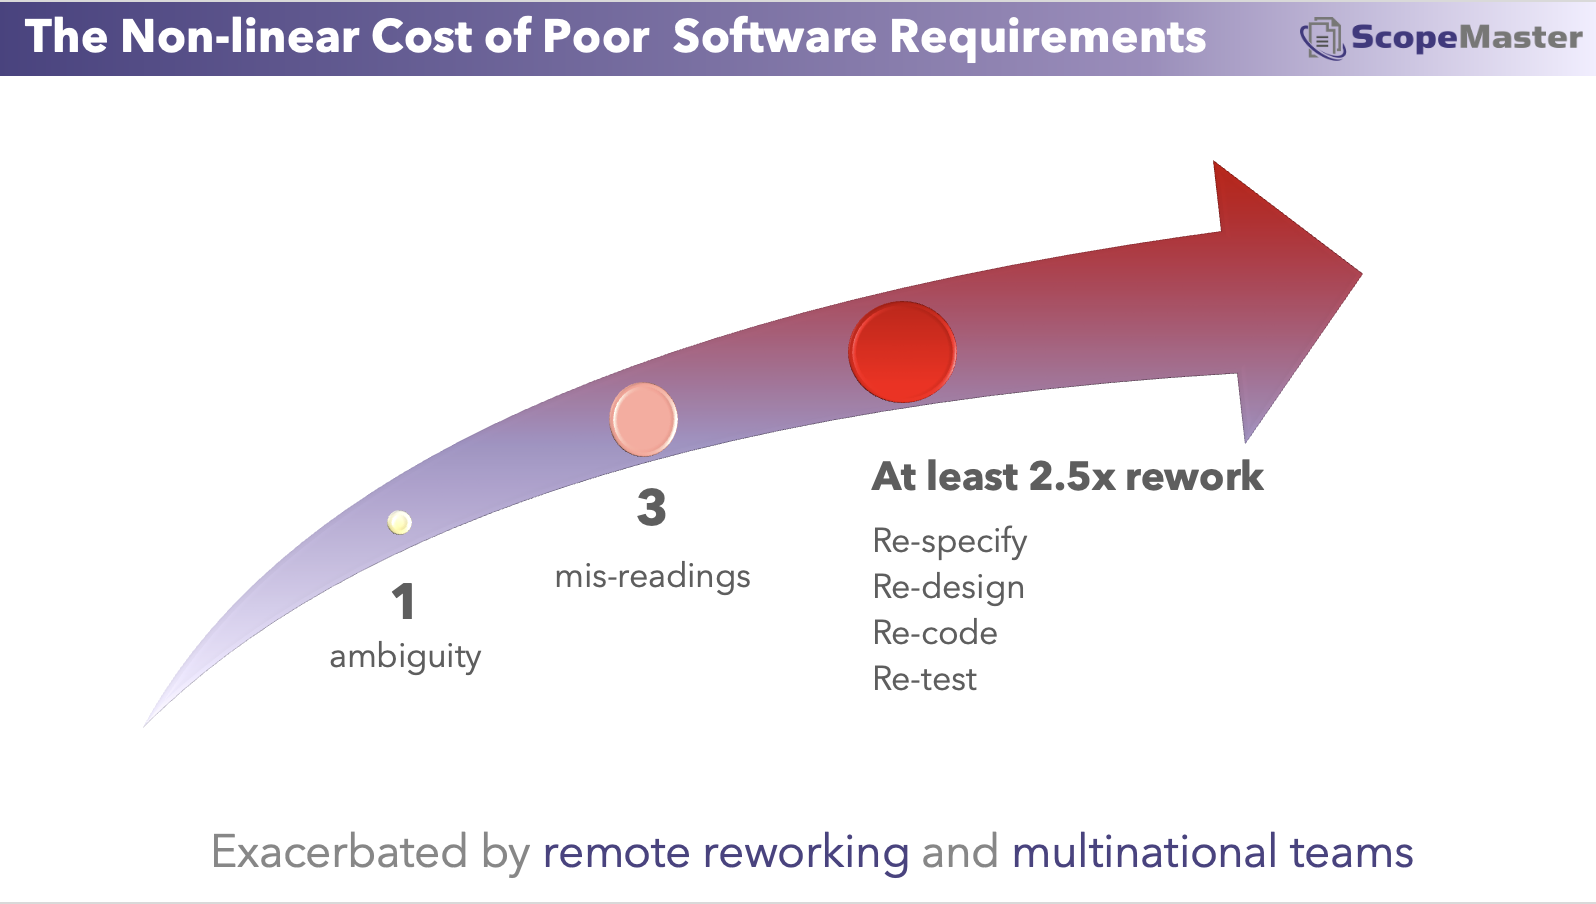 Die Kosten für minderwertige Softwareanforderungen bei der Generierung von Nacharbeiten